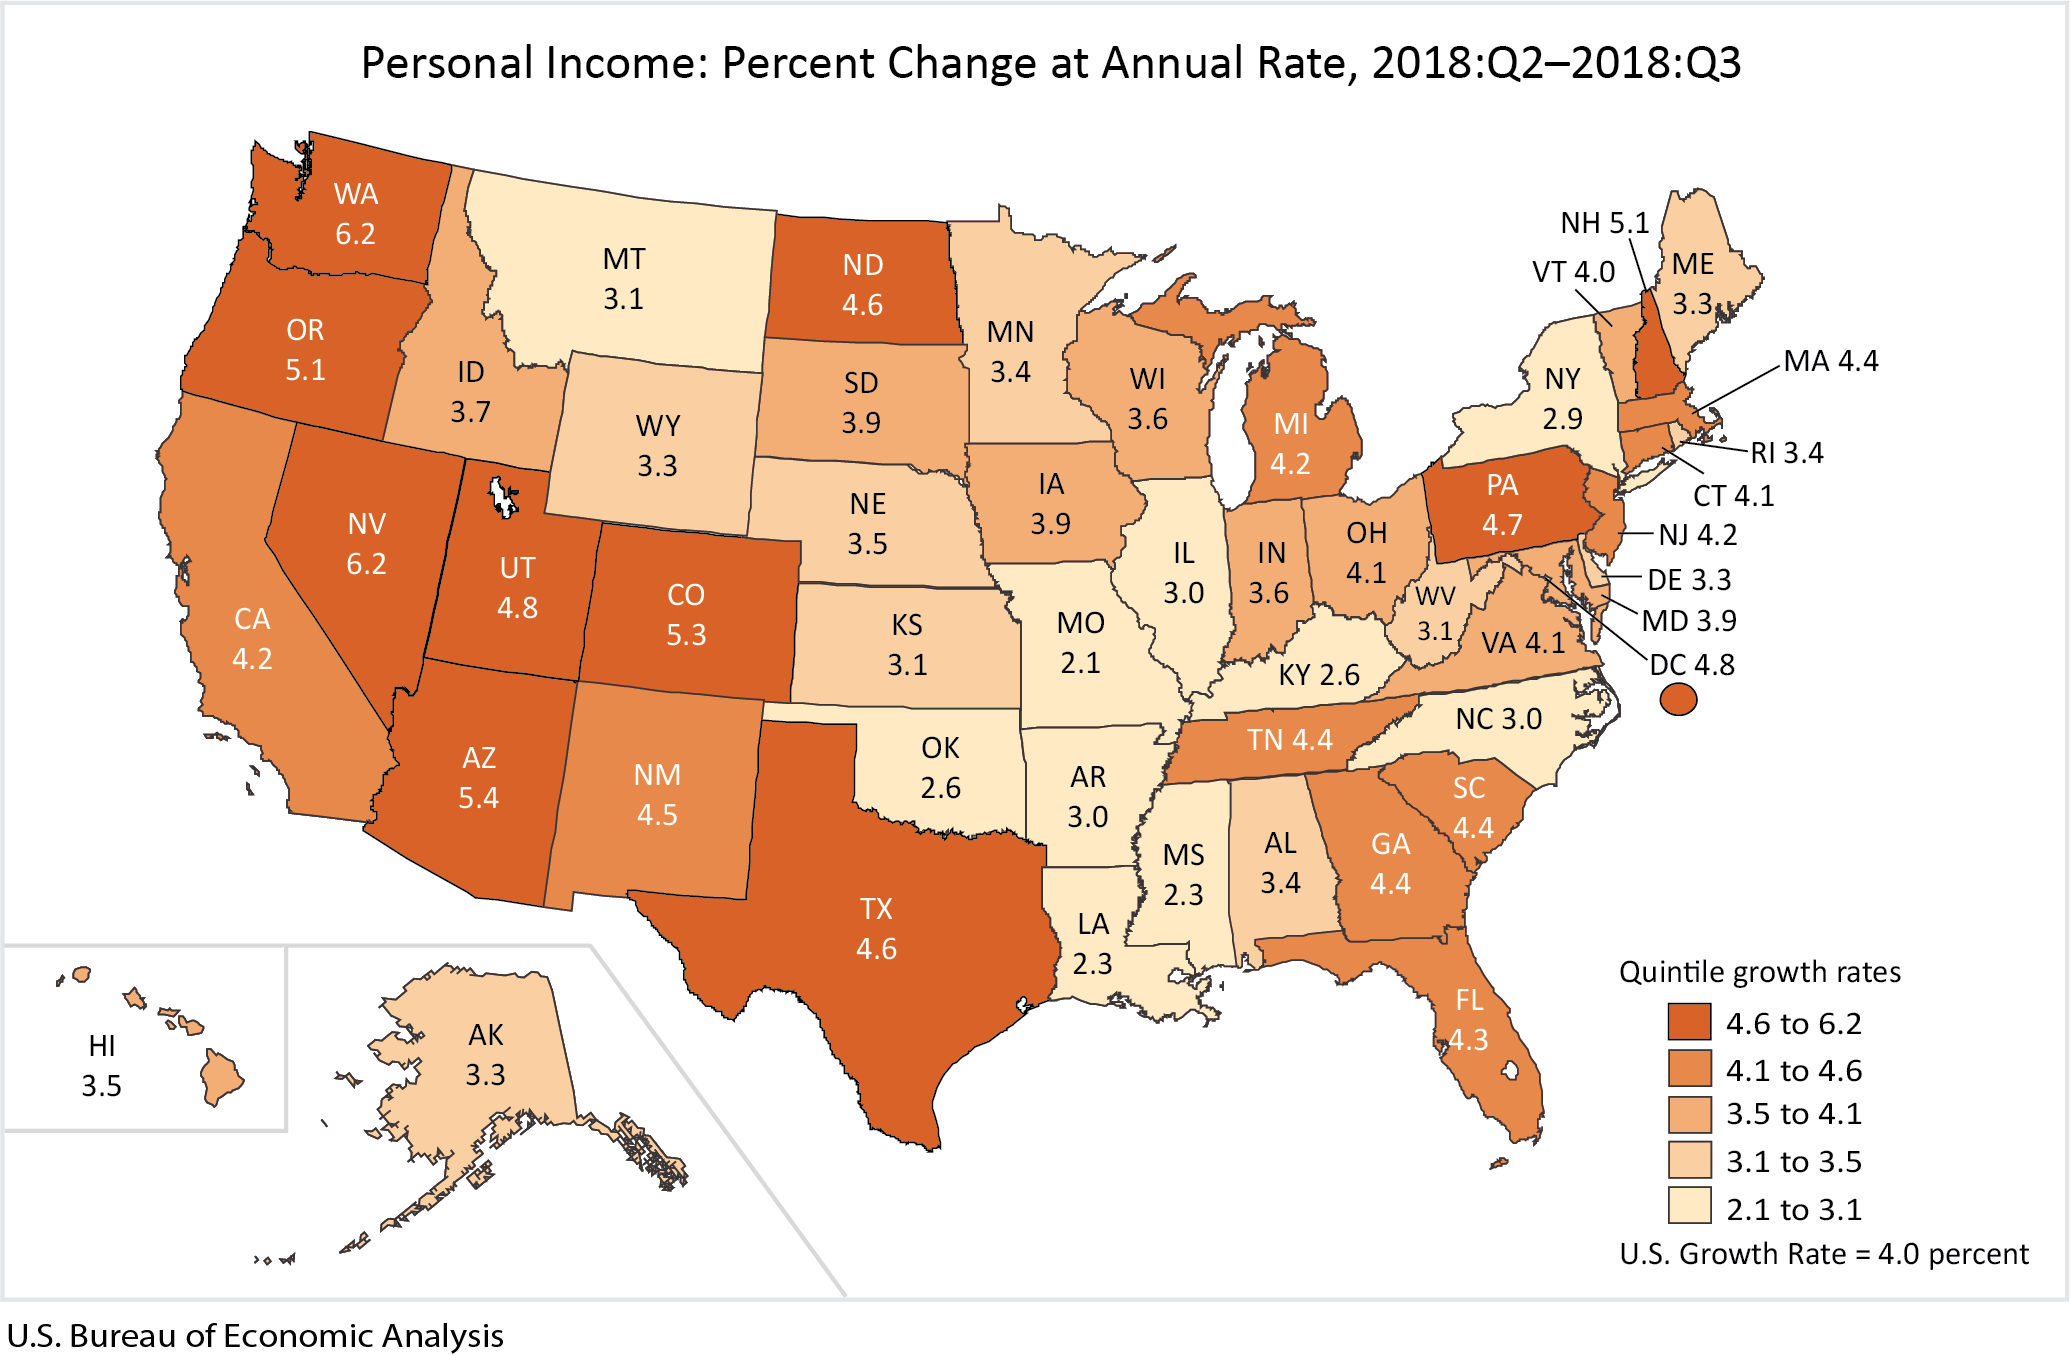 Personal Income: Percent Change, 2018:Q2-2018:Q3